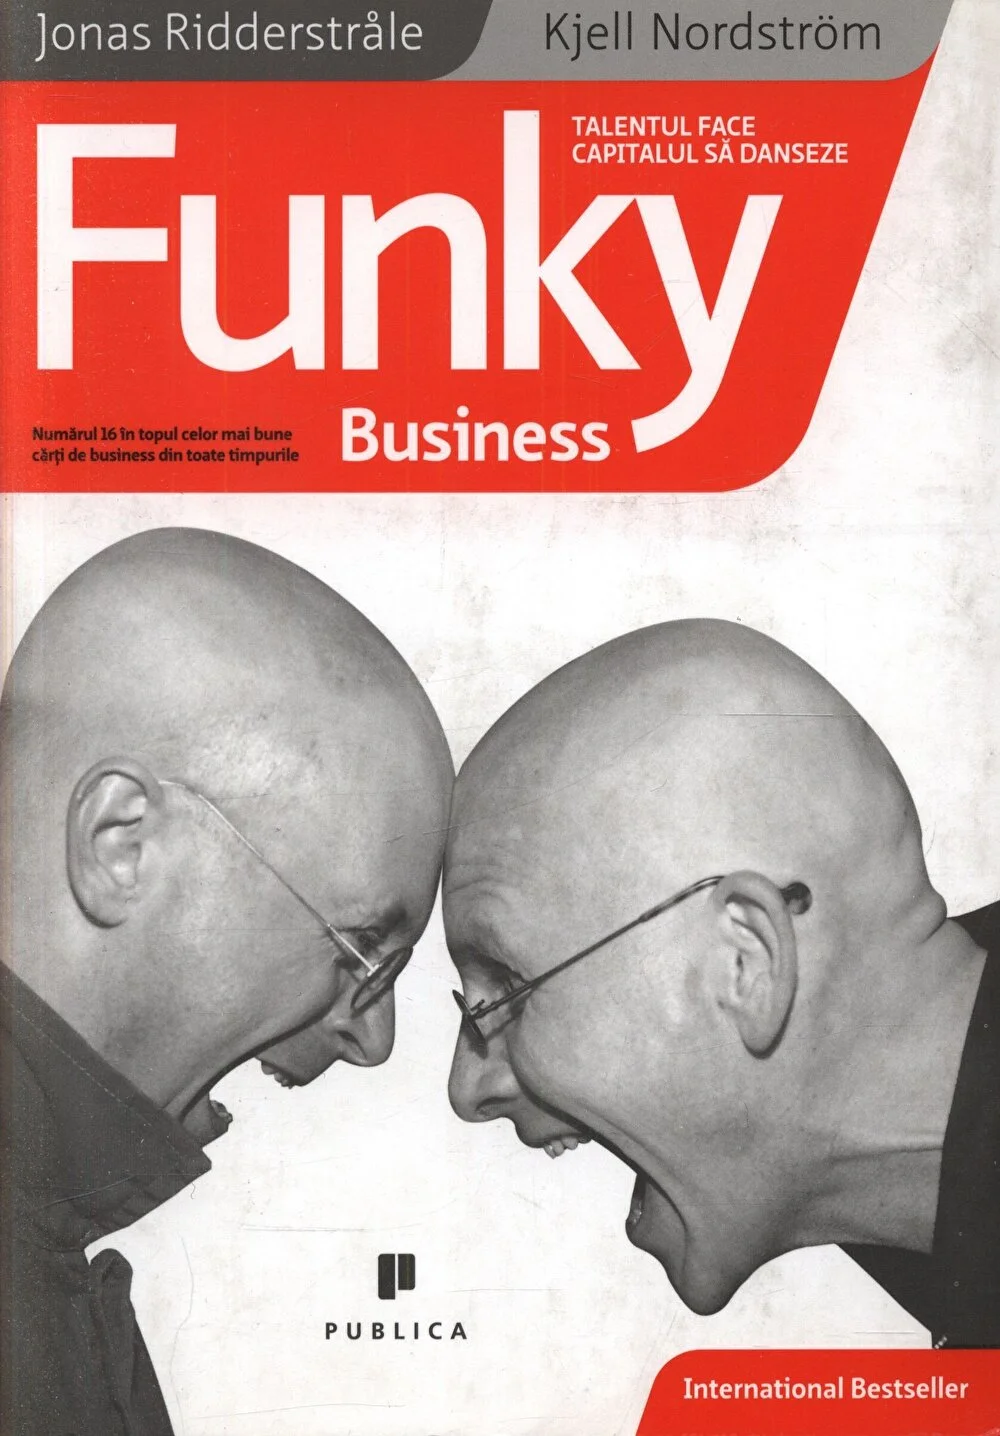 Funky business | Kjell Nordström, Jonas Ridderstrale carturesti.ro poza bestsellers.ro